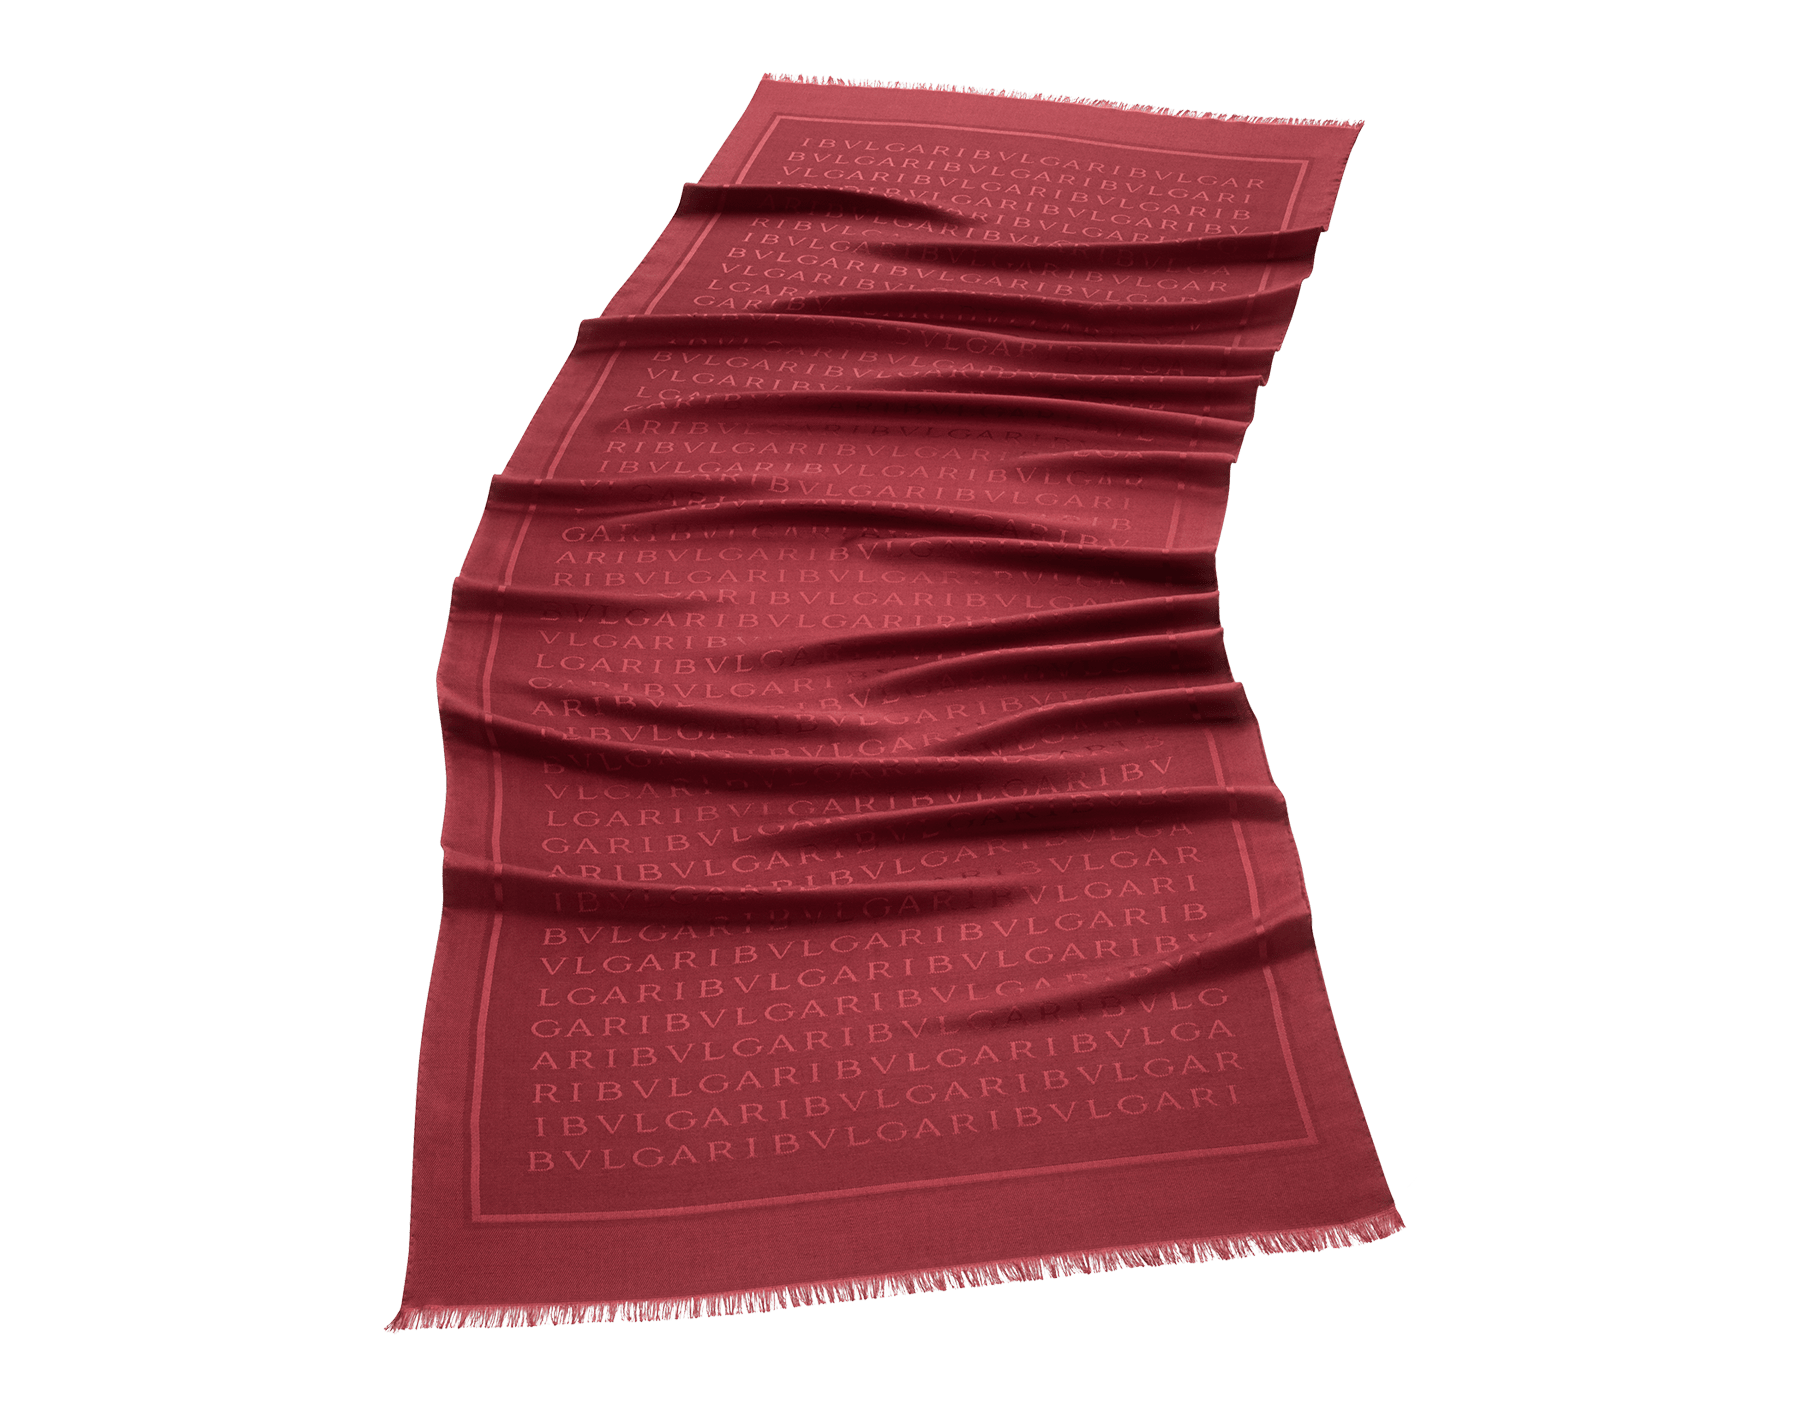 Lettere Maxi stole in fine ruby red silk wool. LETTEREMAXIb image 1